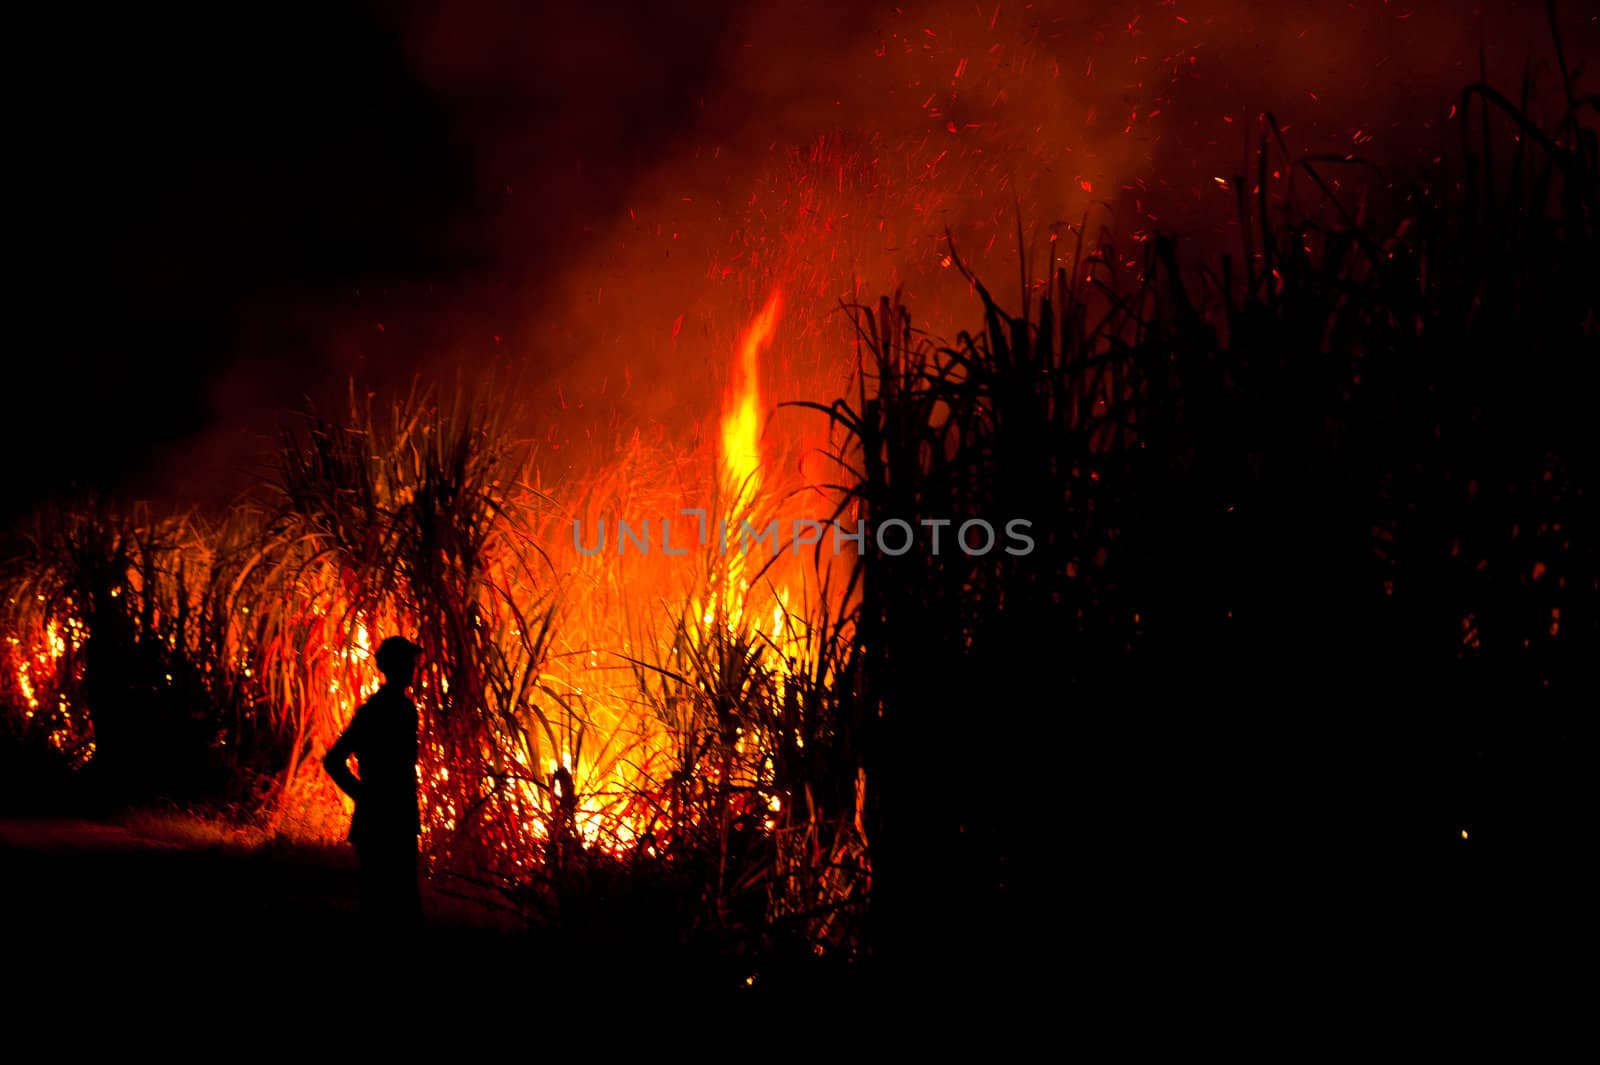 Big fire on the farmland